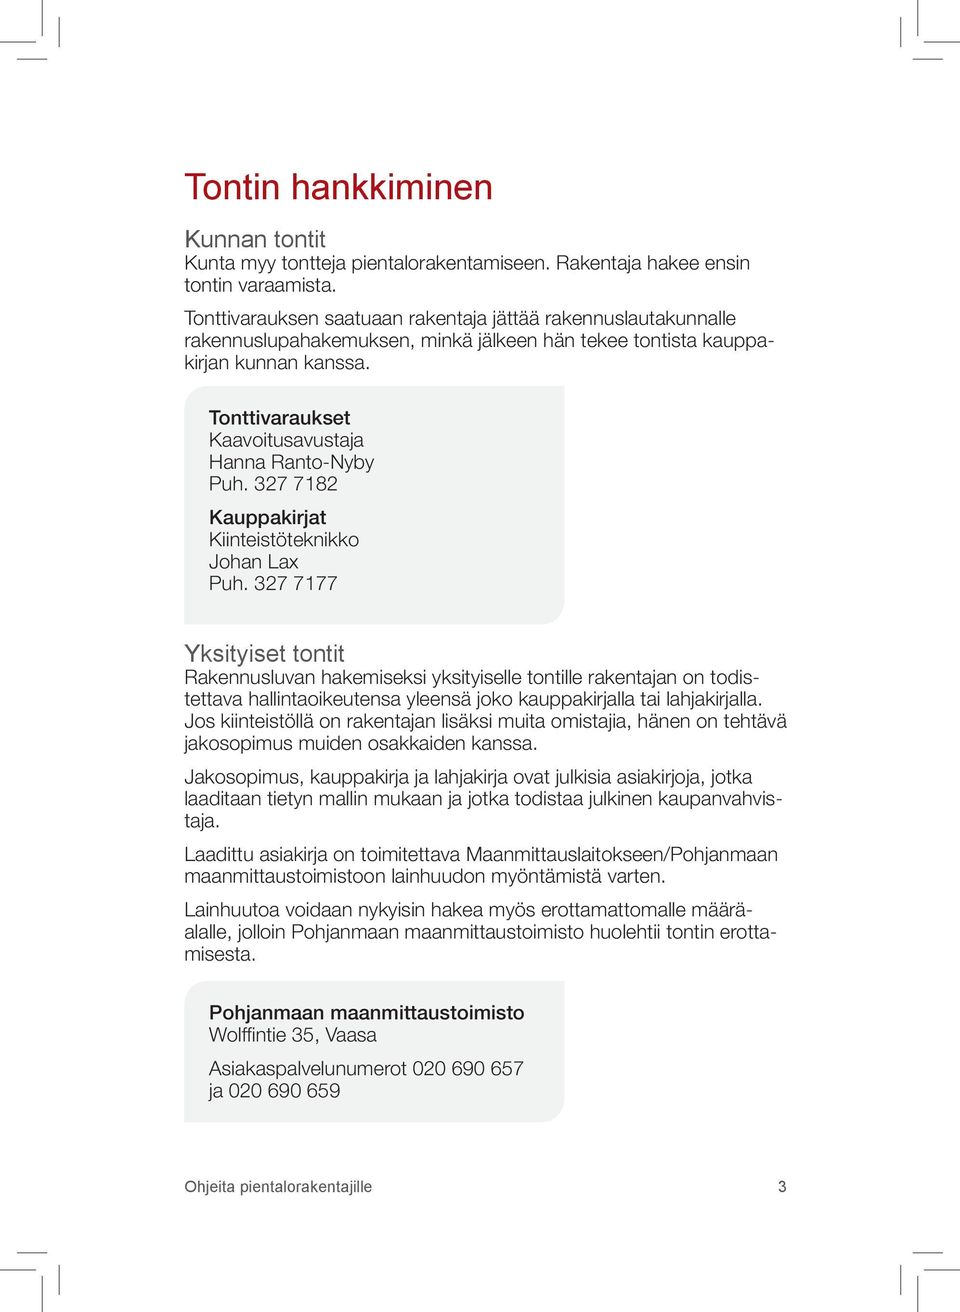 Tonttivaraukset Kaavoitusavustaja Hanna Ranto-Nyby Puh. 327 7182 Kauppakirjat Kiinteistöteknikko Johan Lax Puh.